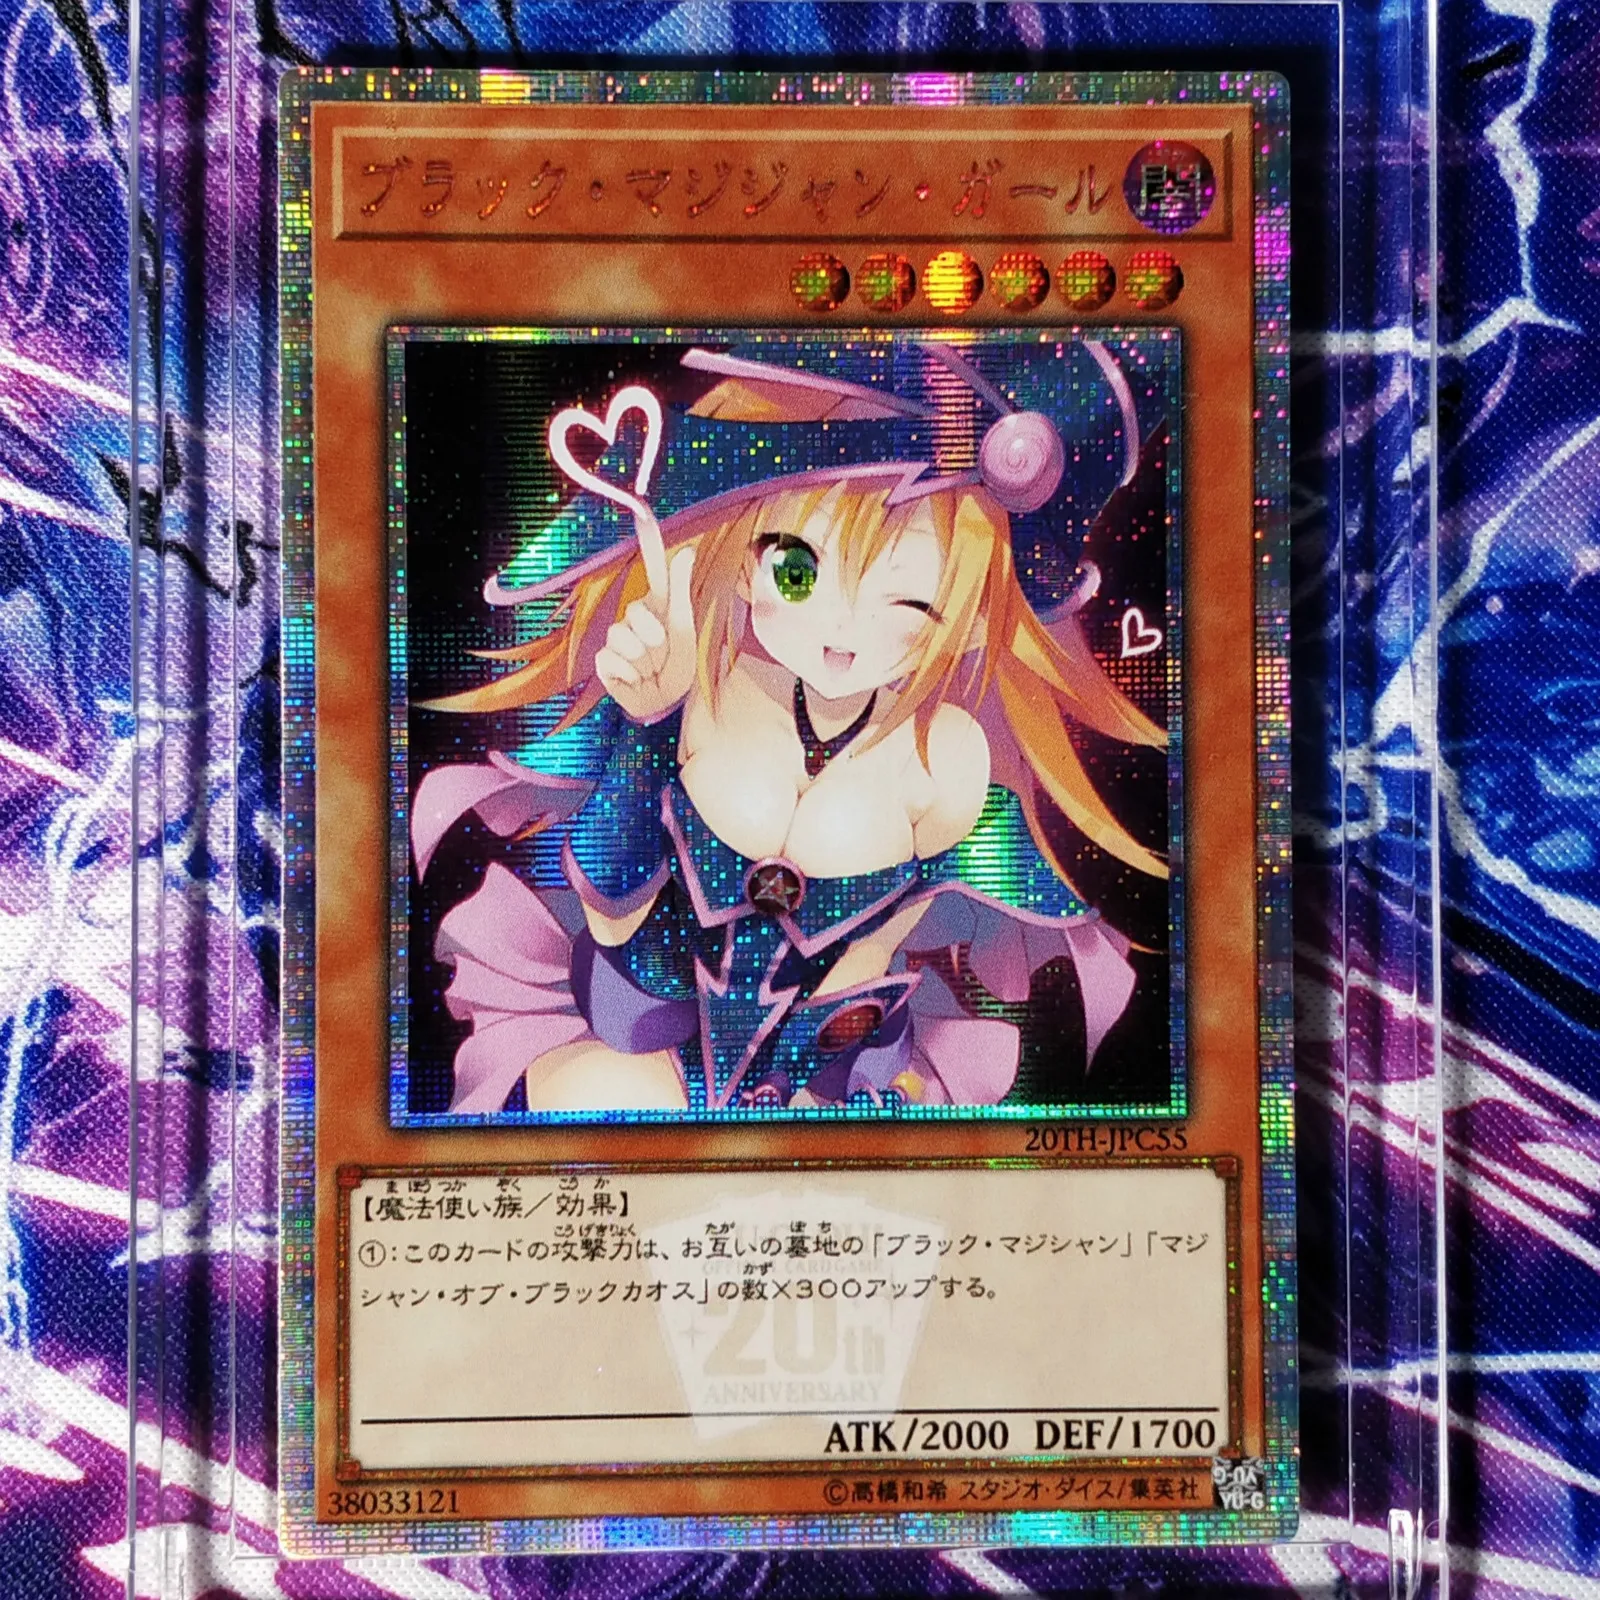 Yu Gi Oh bricolage magicien foncé fille jouets colorés loisirs loisirs de Collection jeu Collection Anime cartes